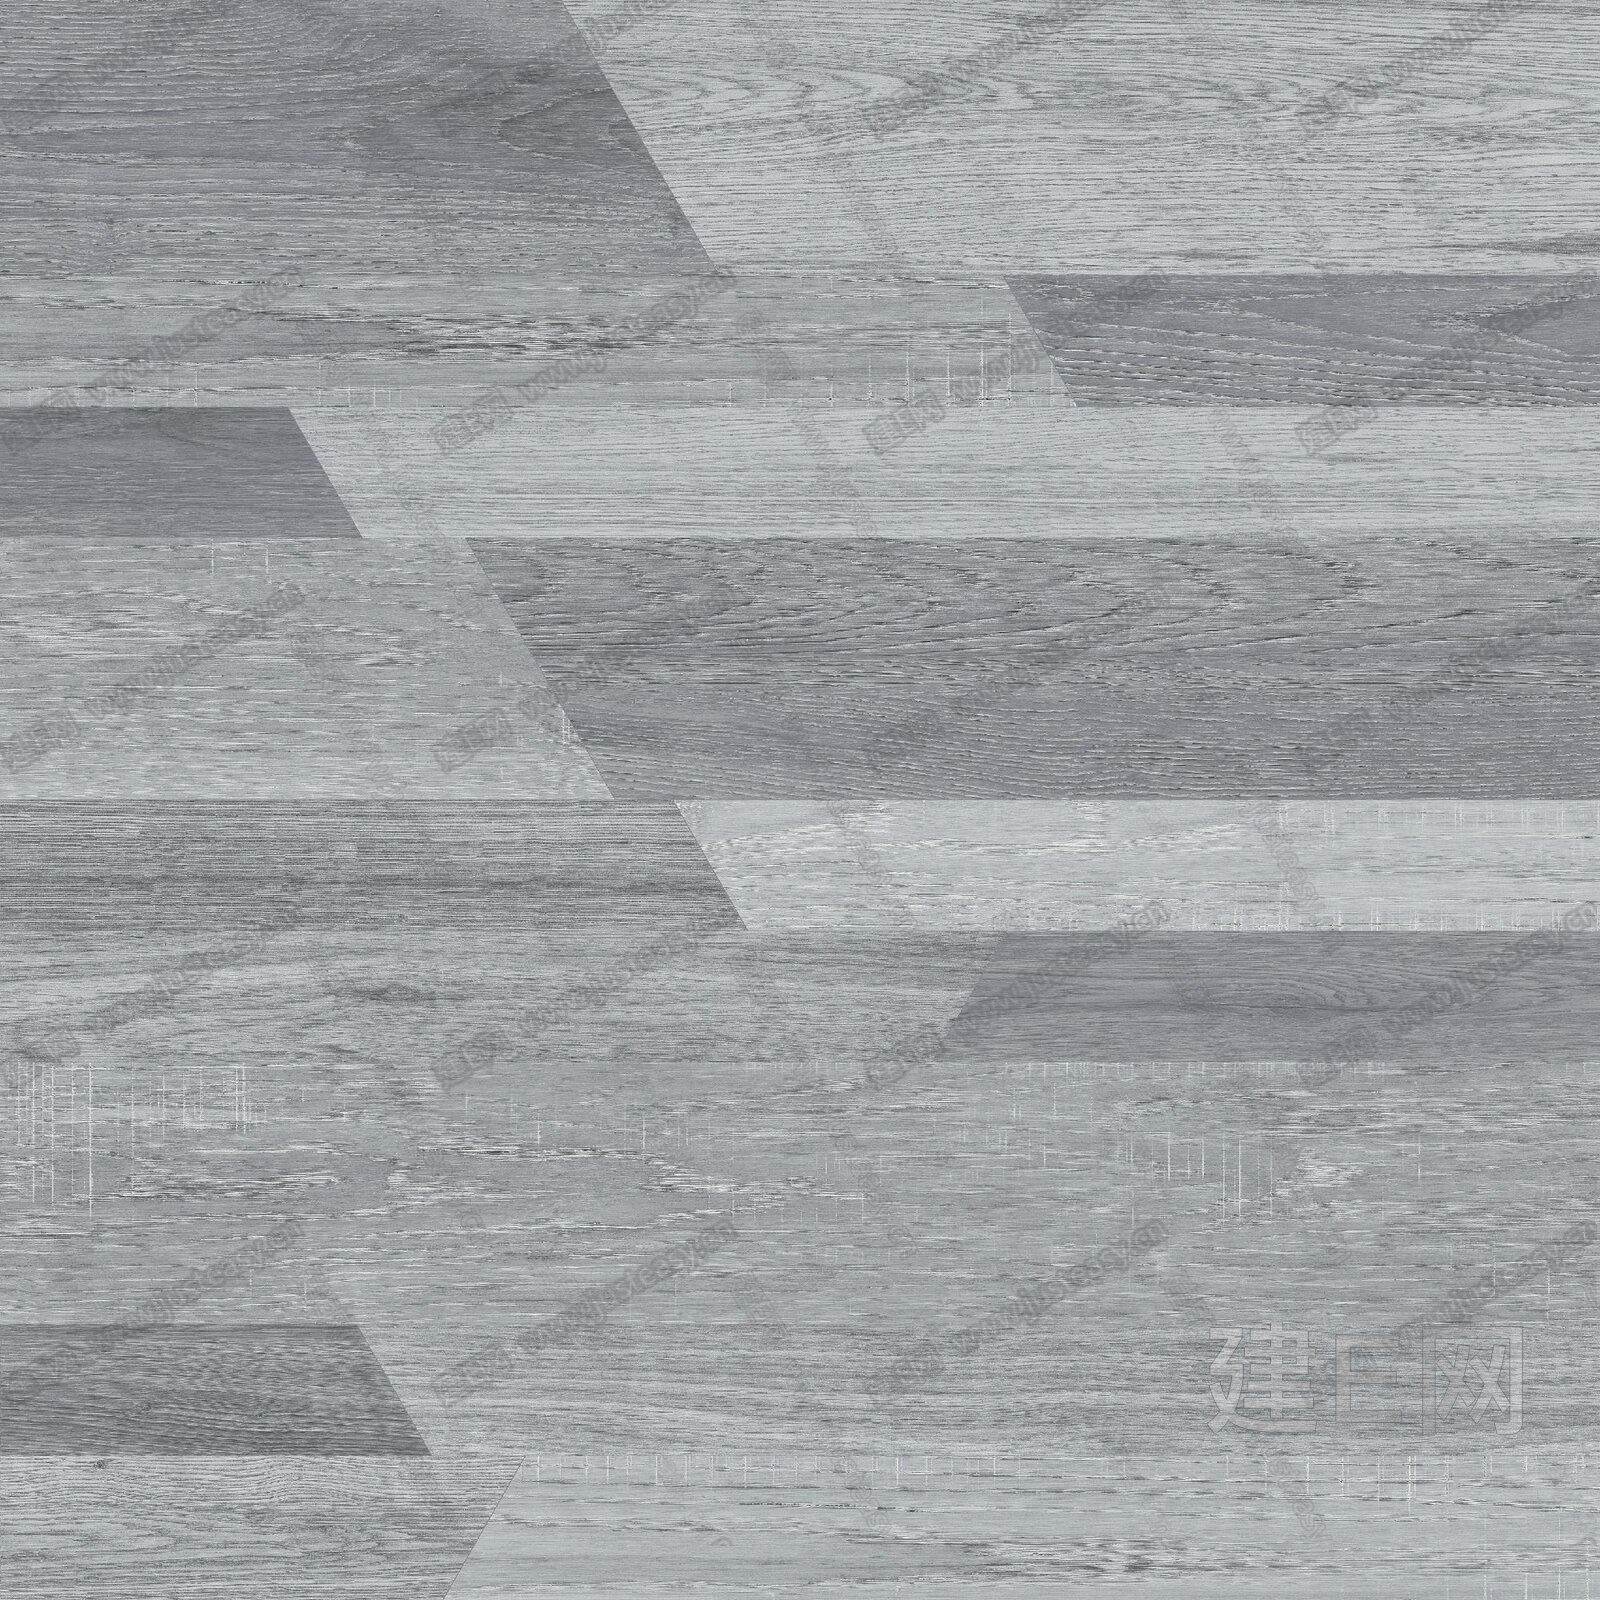 【3D贴图】灰色木地板-3d材质贴图下载_贴图素材_3d贴图网 - 建E网3dmax材质库